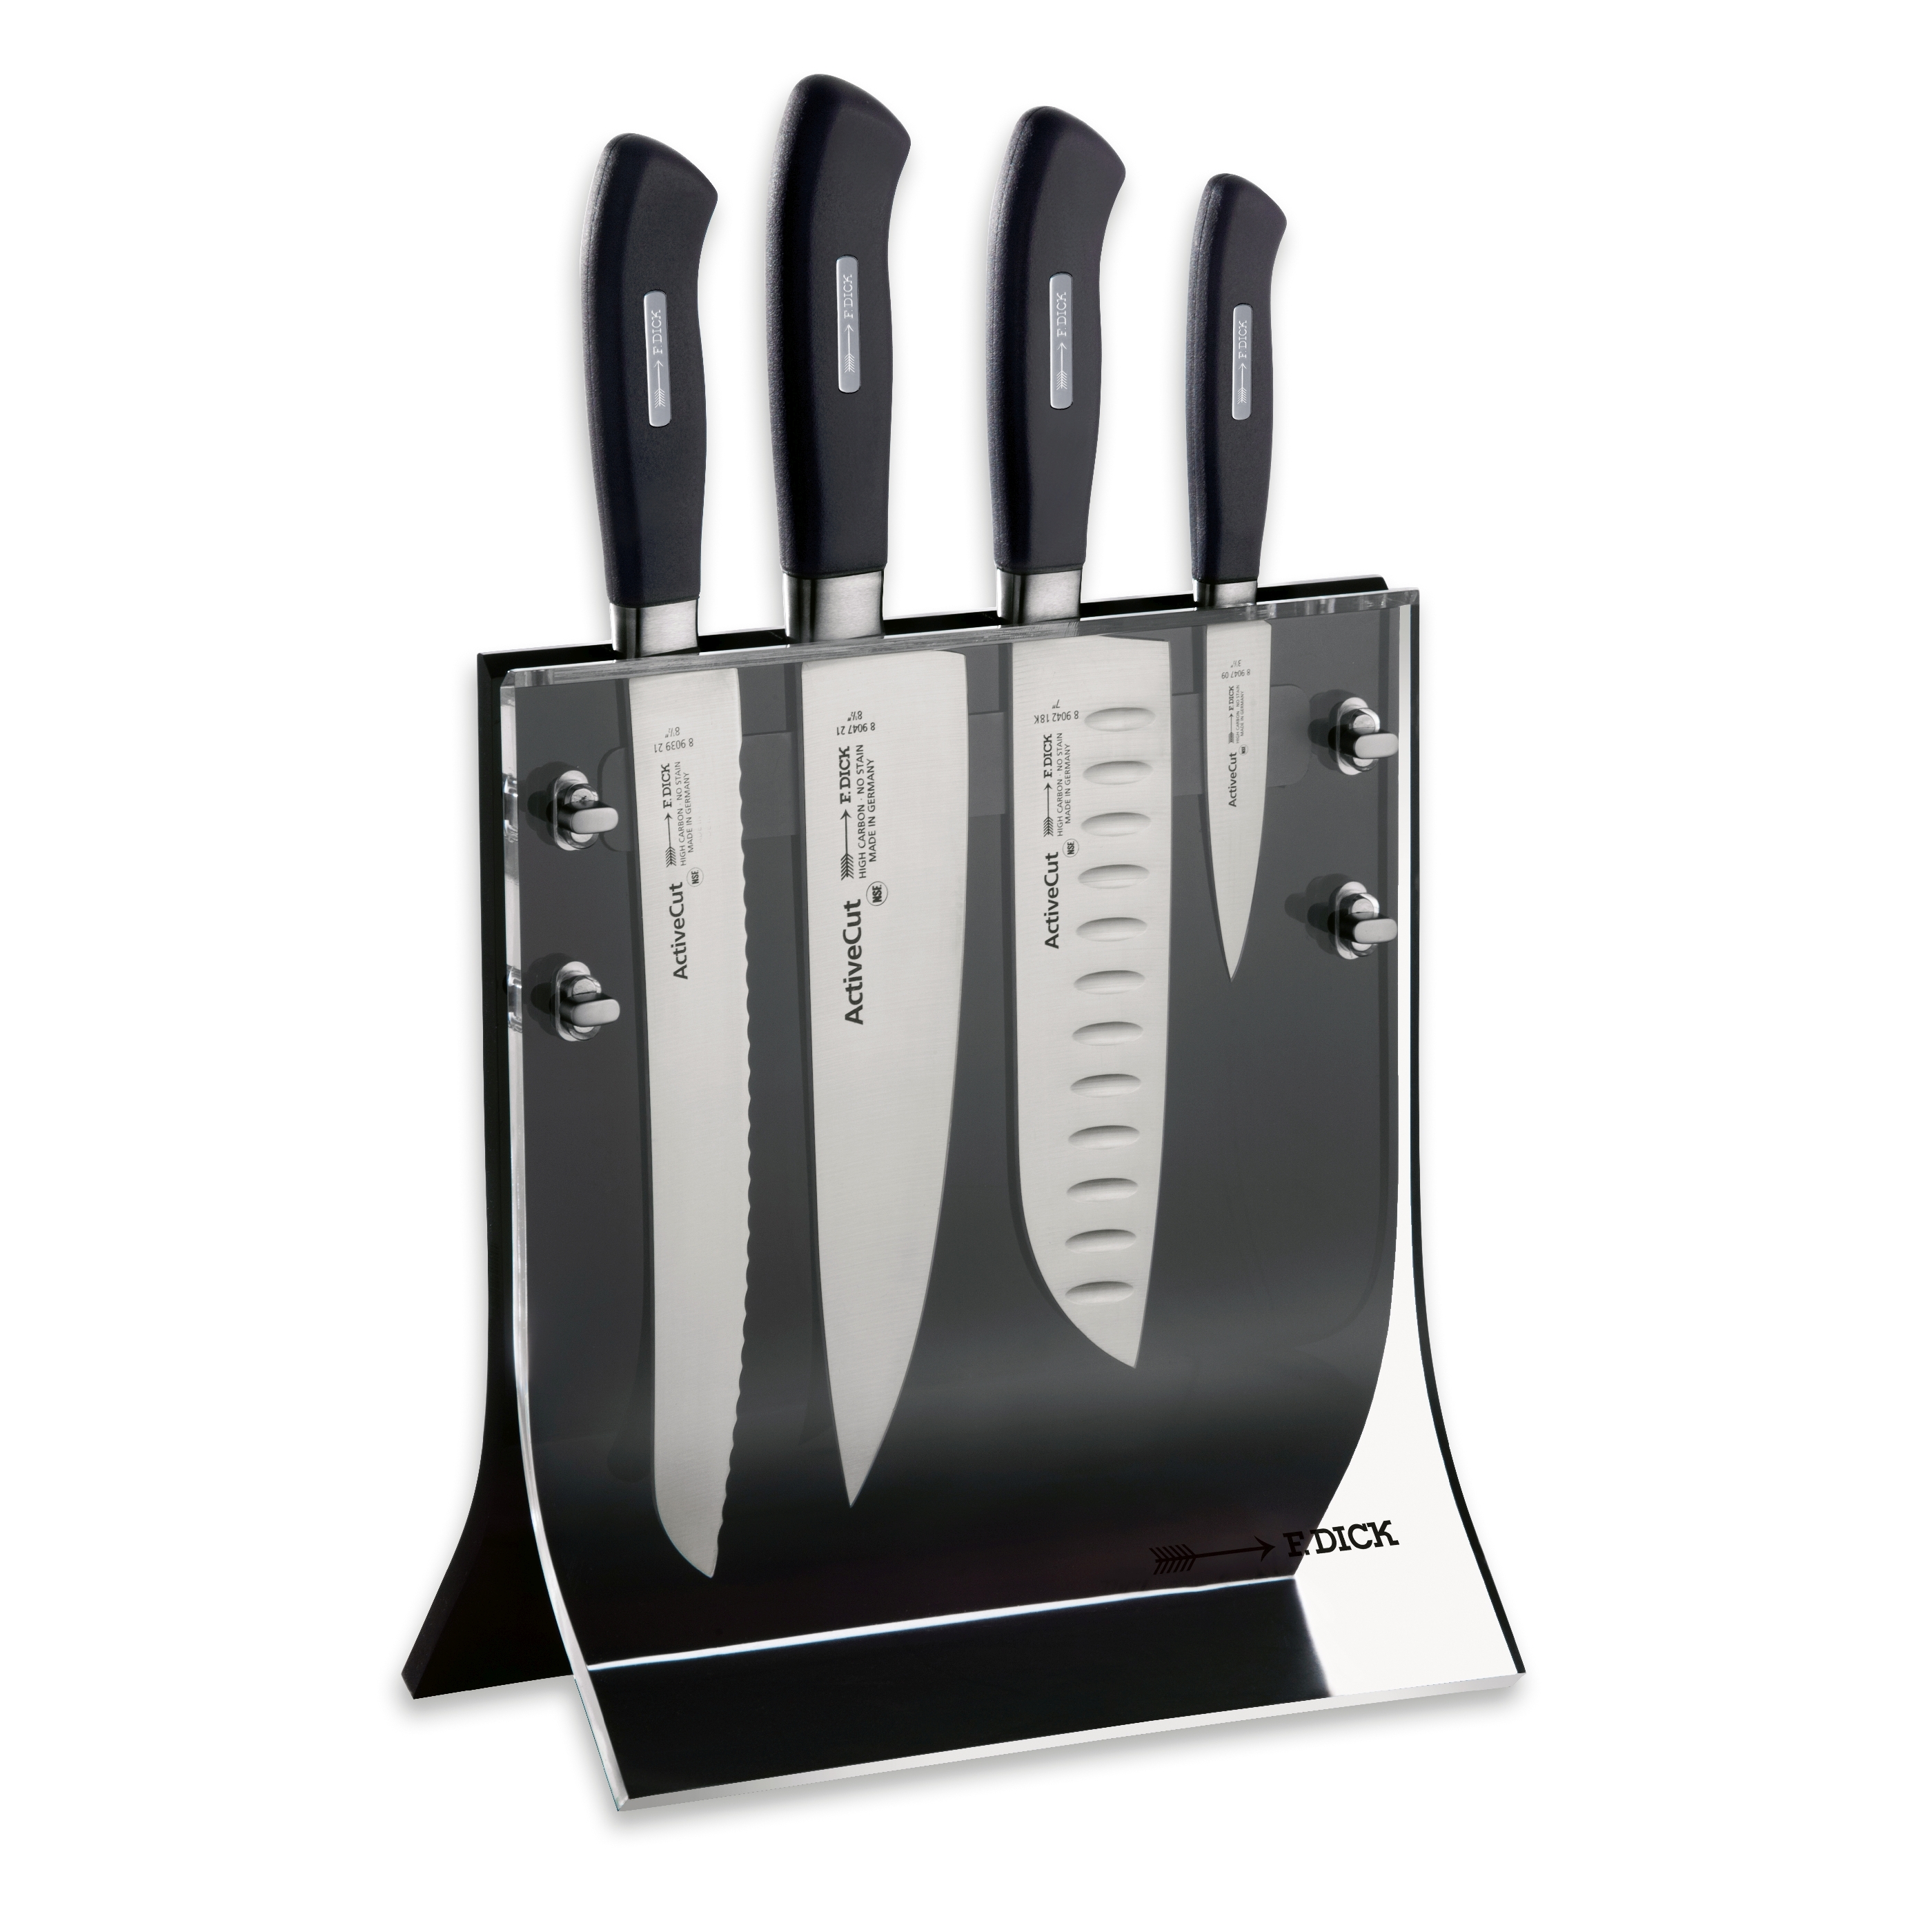 Ножи dick. Блок ножей VT-1351. Набор ножей Forged 1307146. Bork набор ножей на магнитной подставке. Набор кухонных кованых ножей.